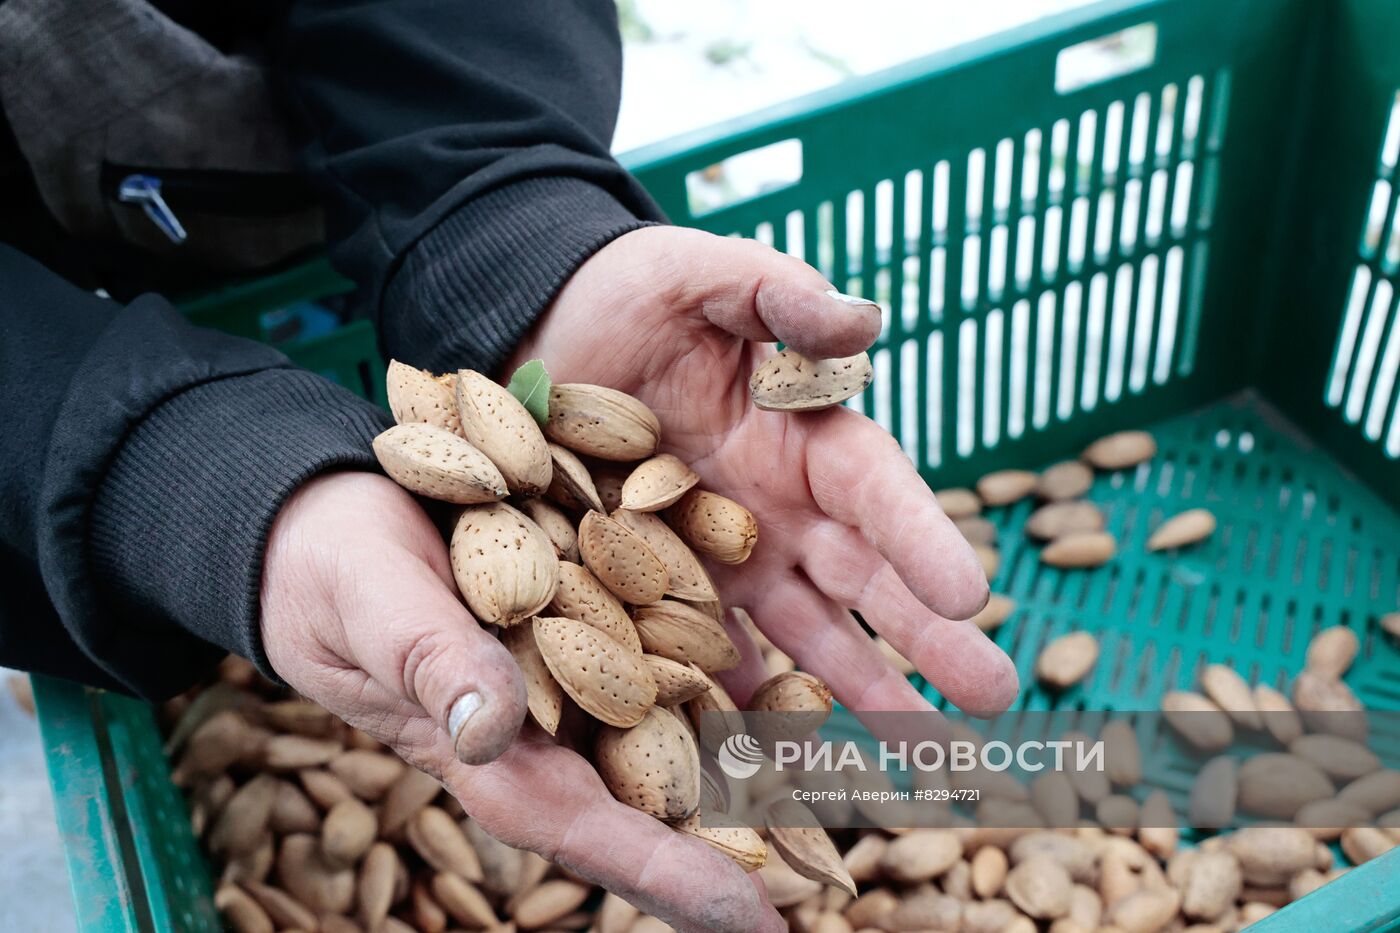 Сбор урожая орехов в ДНР